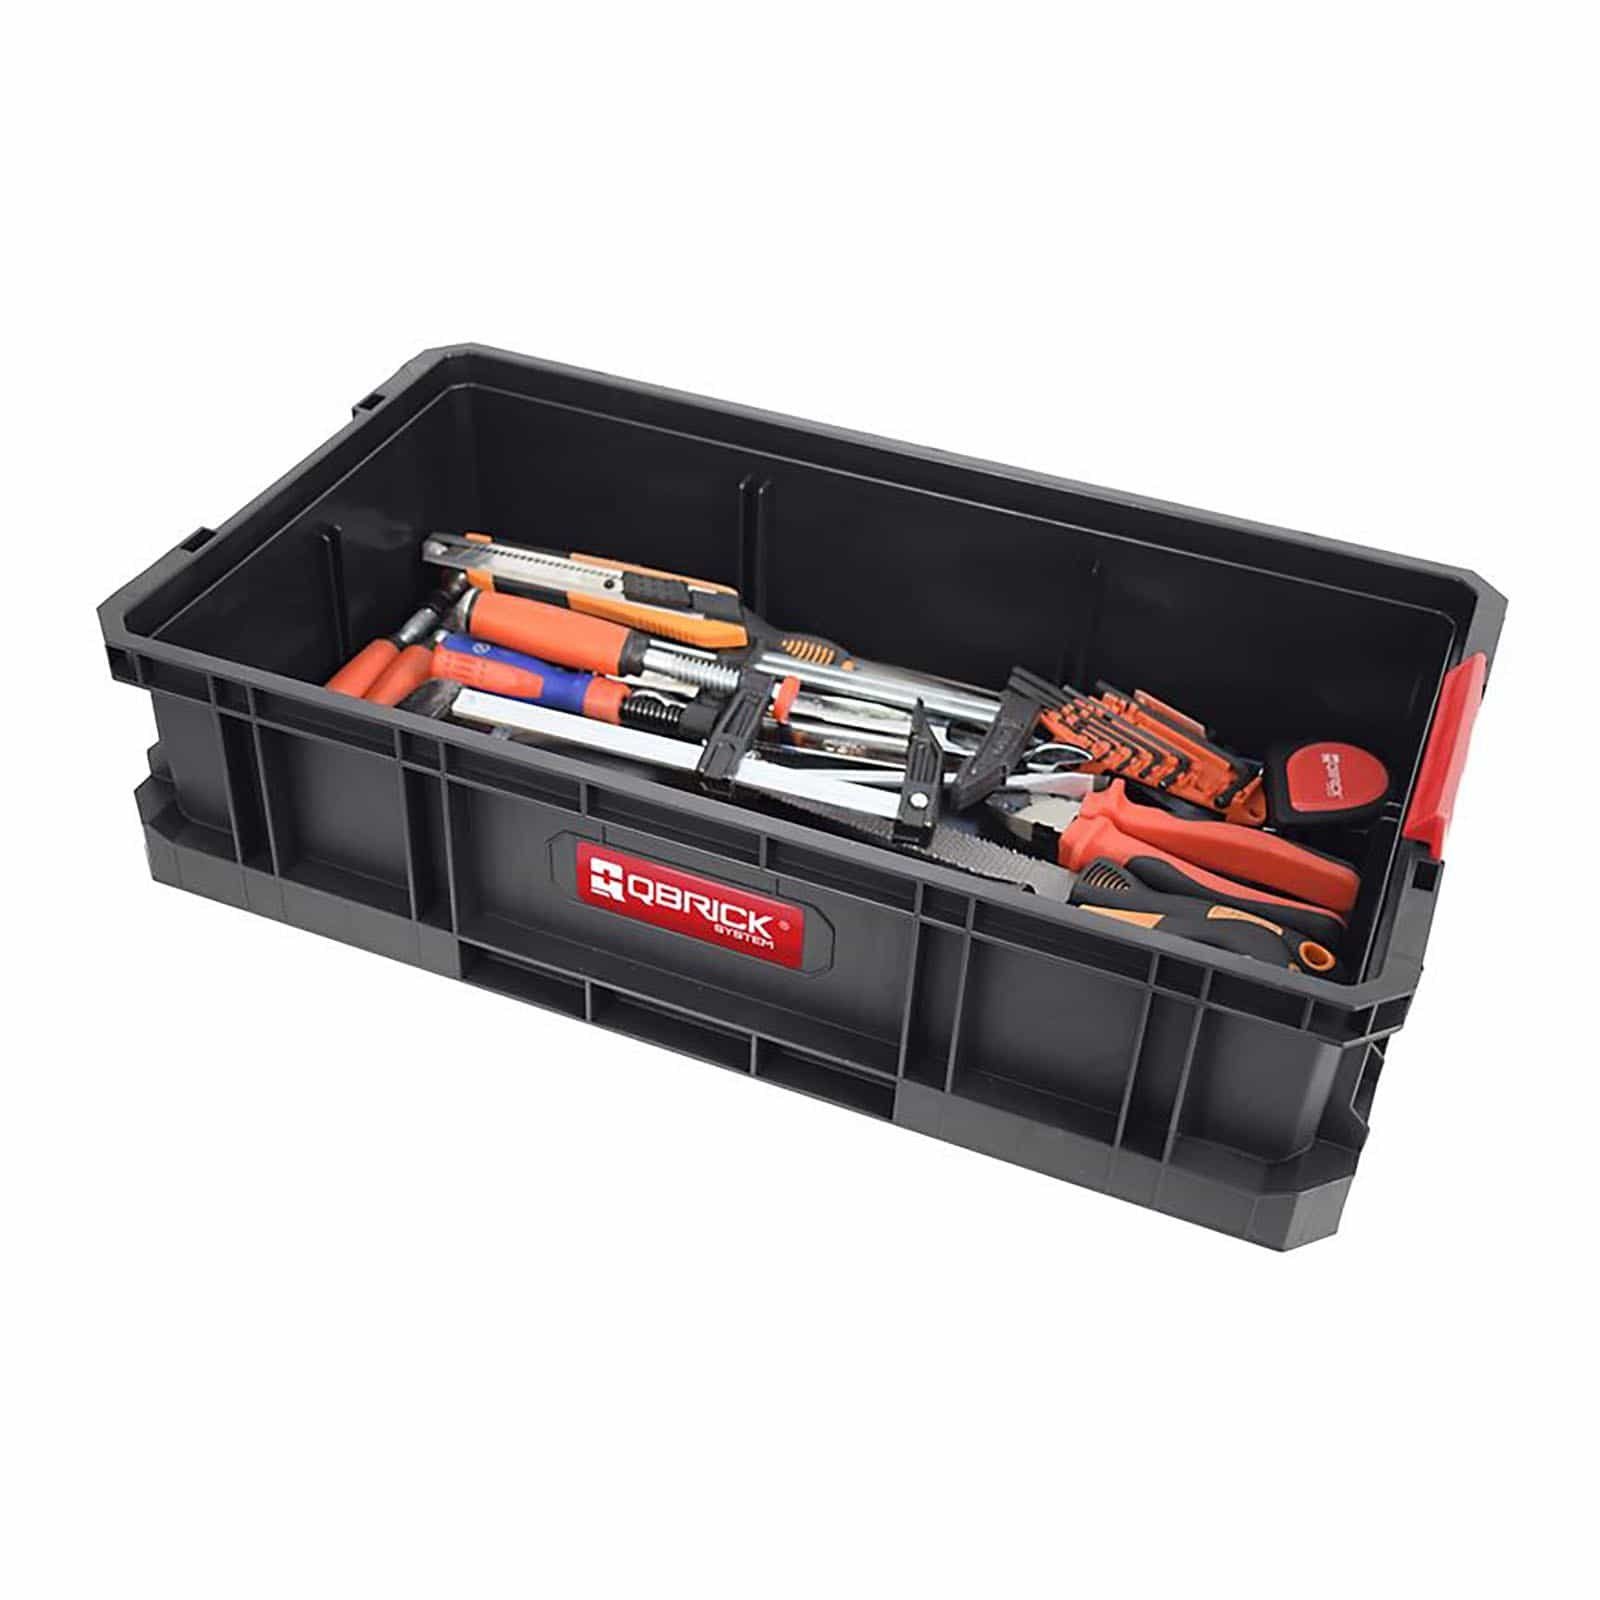 QBRICK System Werkzeugkoffer Werkzeugkasten 100 Werkzeugbox Toolbox TWO System Werkzeugkoffer